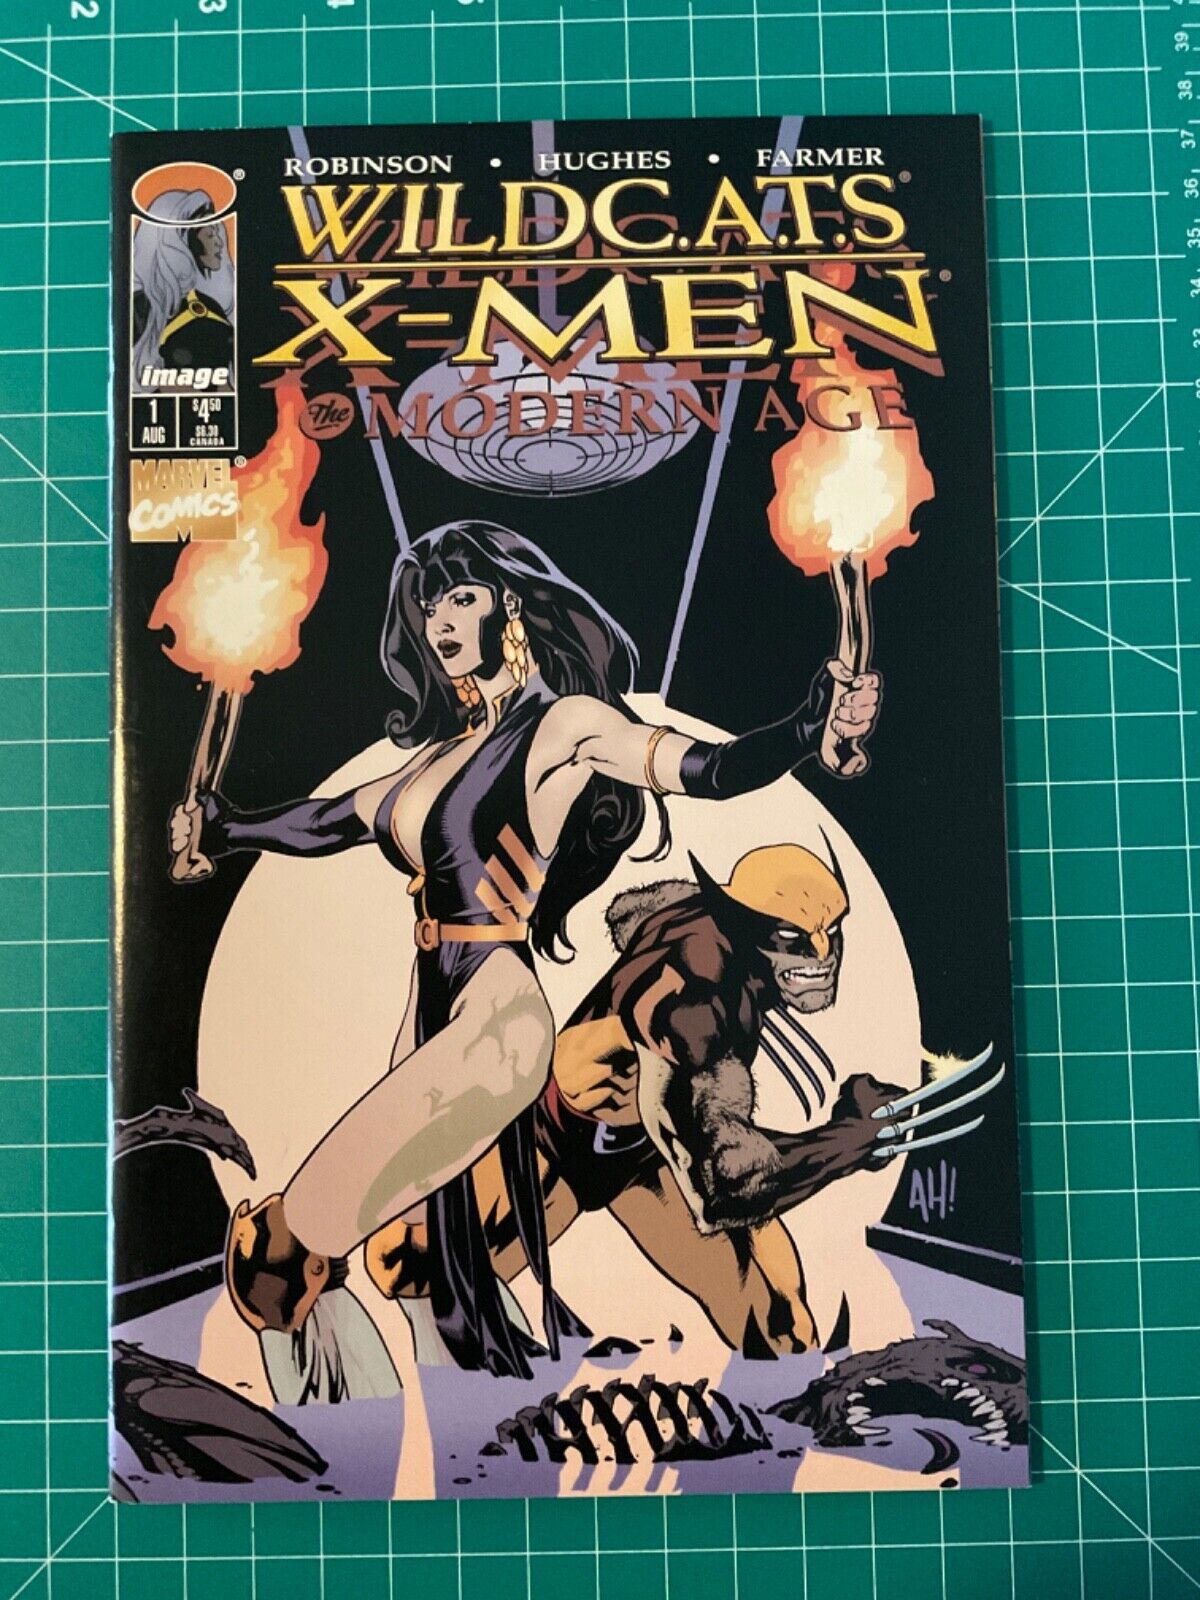 WILDCATS X-Men #1 Adam Hughes Image Marvel 1997